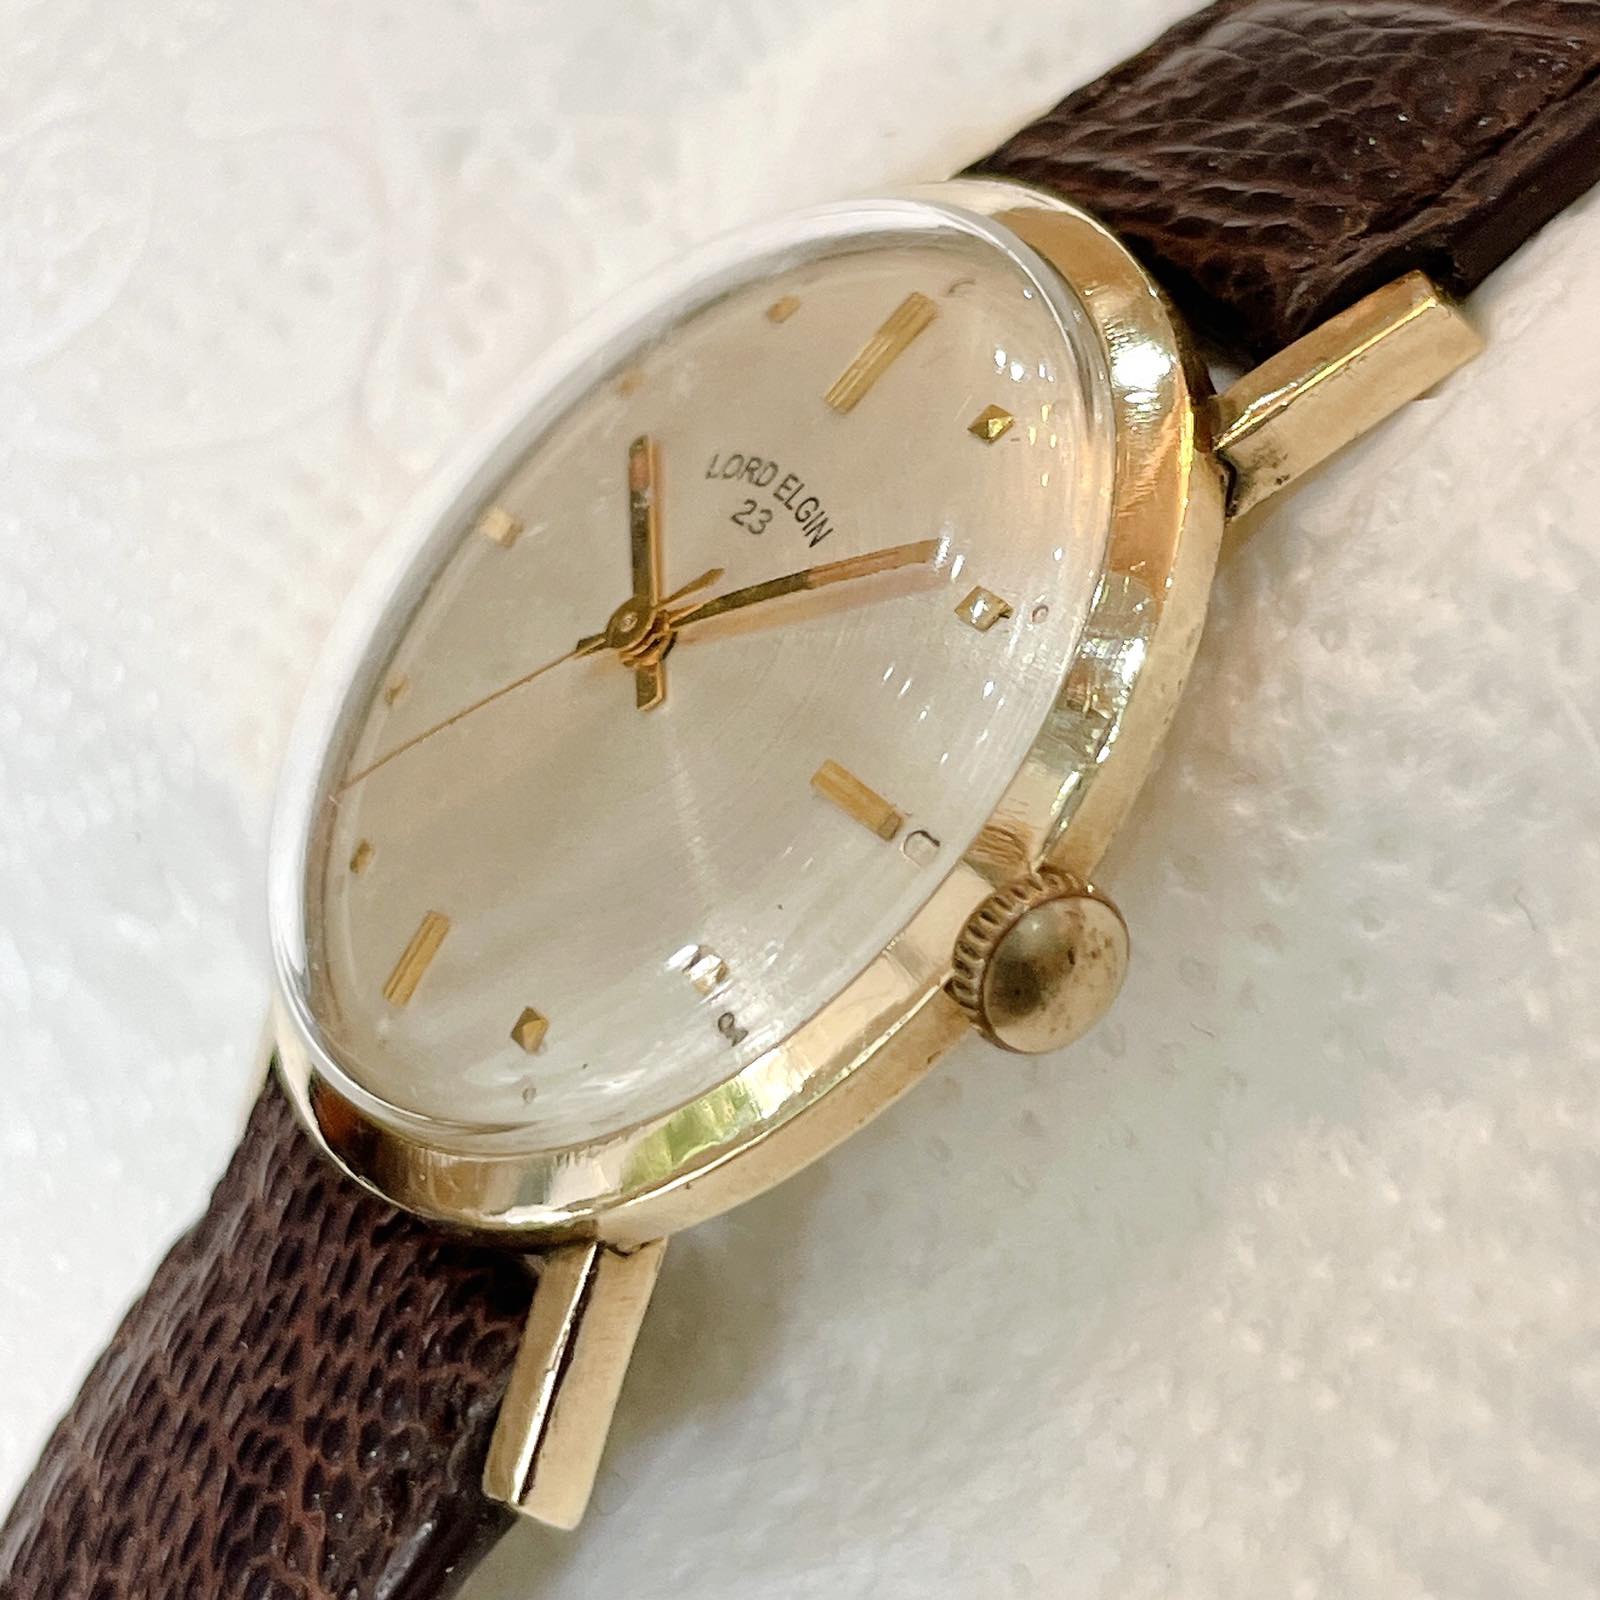 Đồng hồ cổ Lord Elgin lên dây bọc vàng 10k RGP chính hãng thụy Sĩ